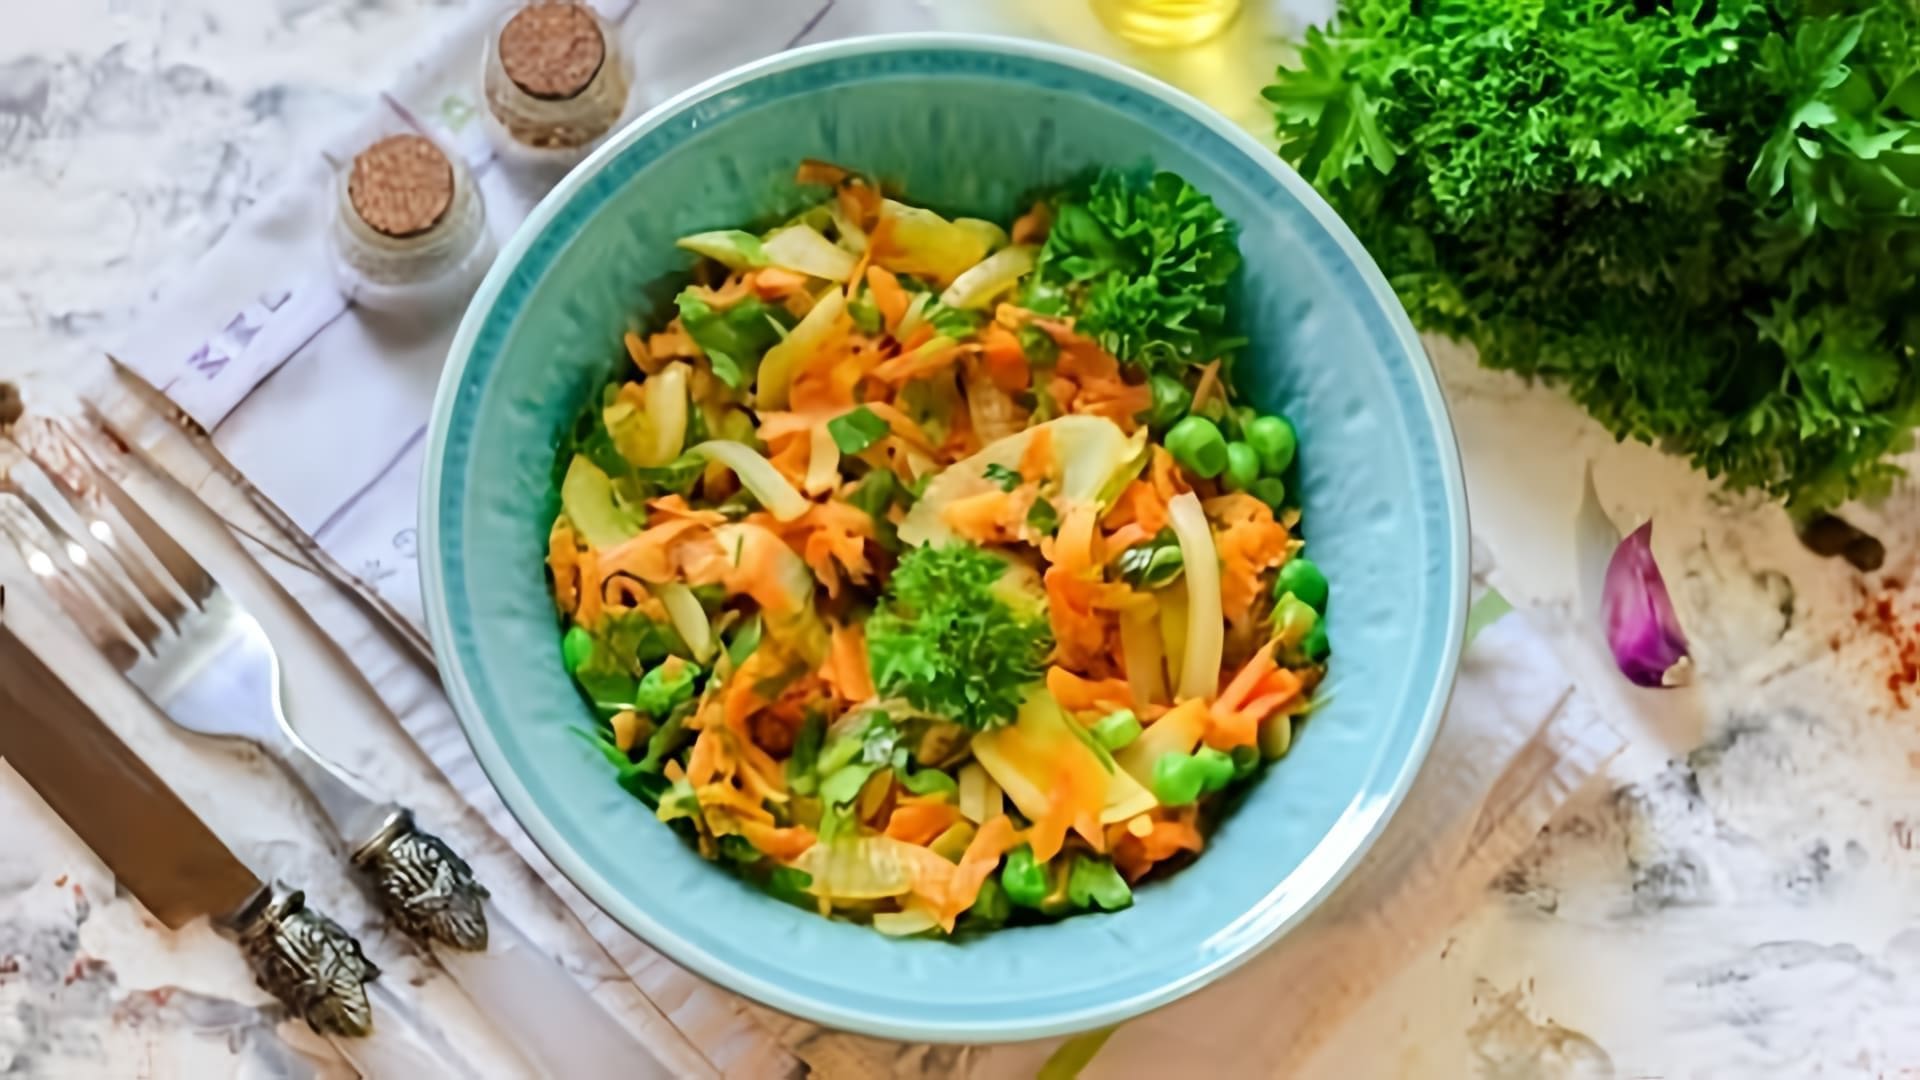 В этом видео демонстрируется процесс приготовления салата с жареным луком и морковью